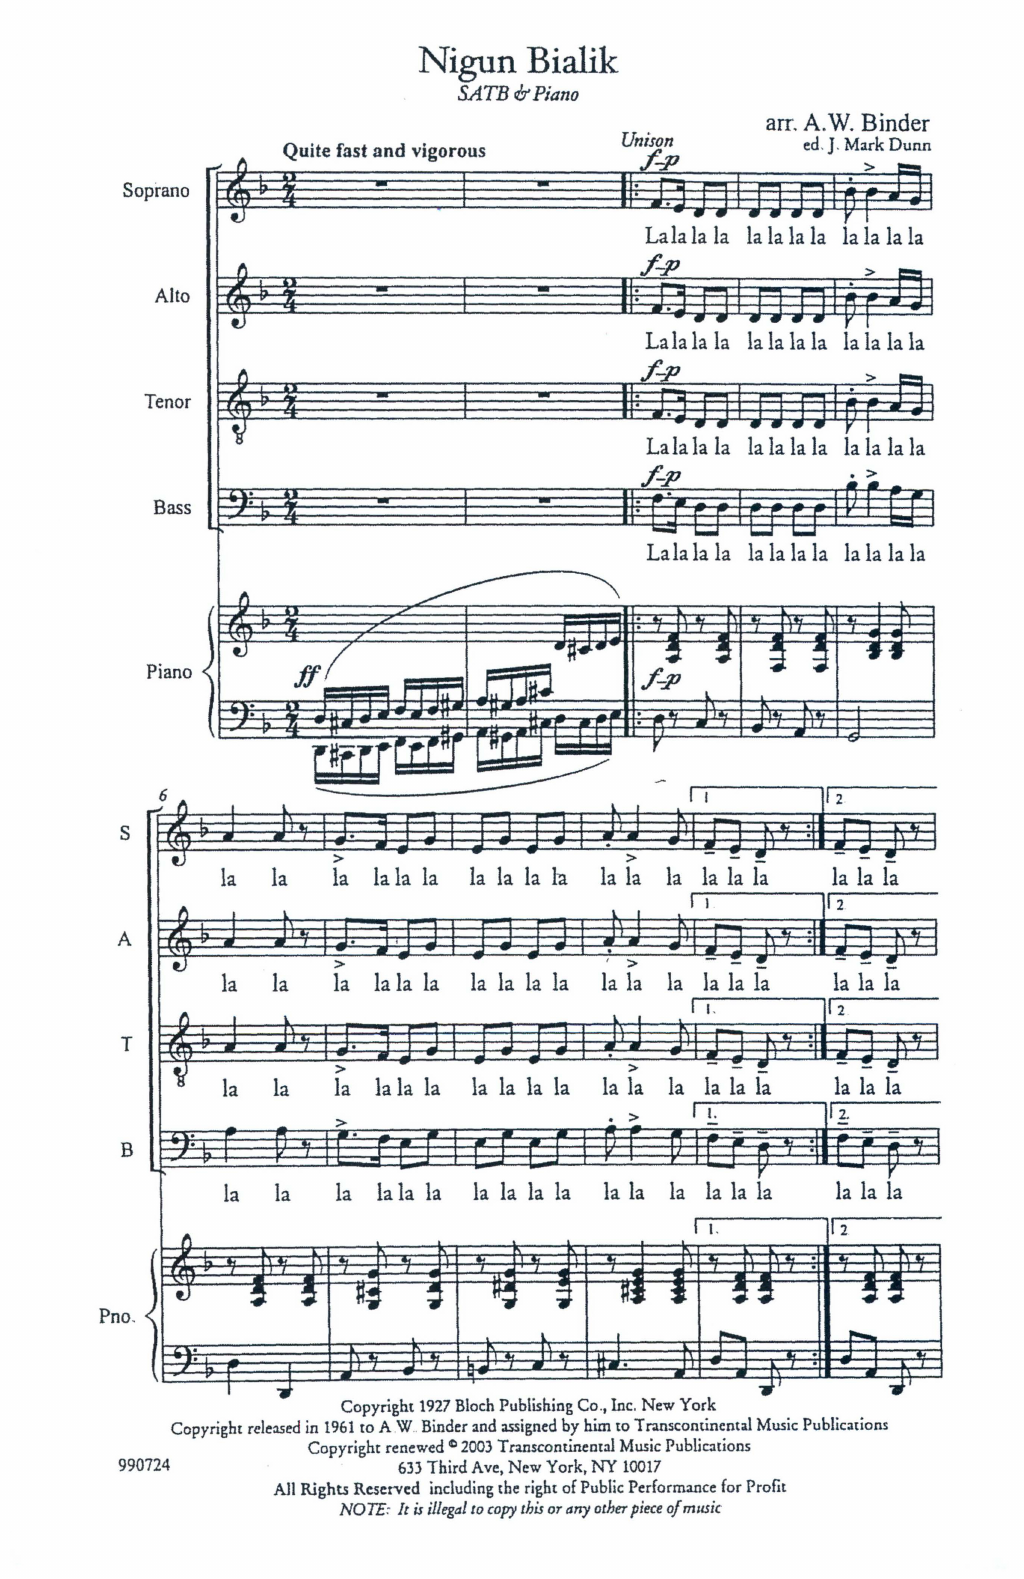 A.W. Binder Nigun Bialik Sheet Music Notes & Chords for SATB Choir - Download or Print PDF